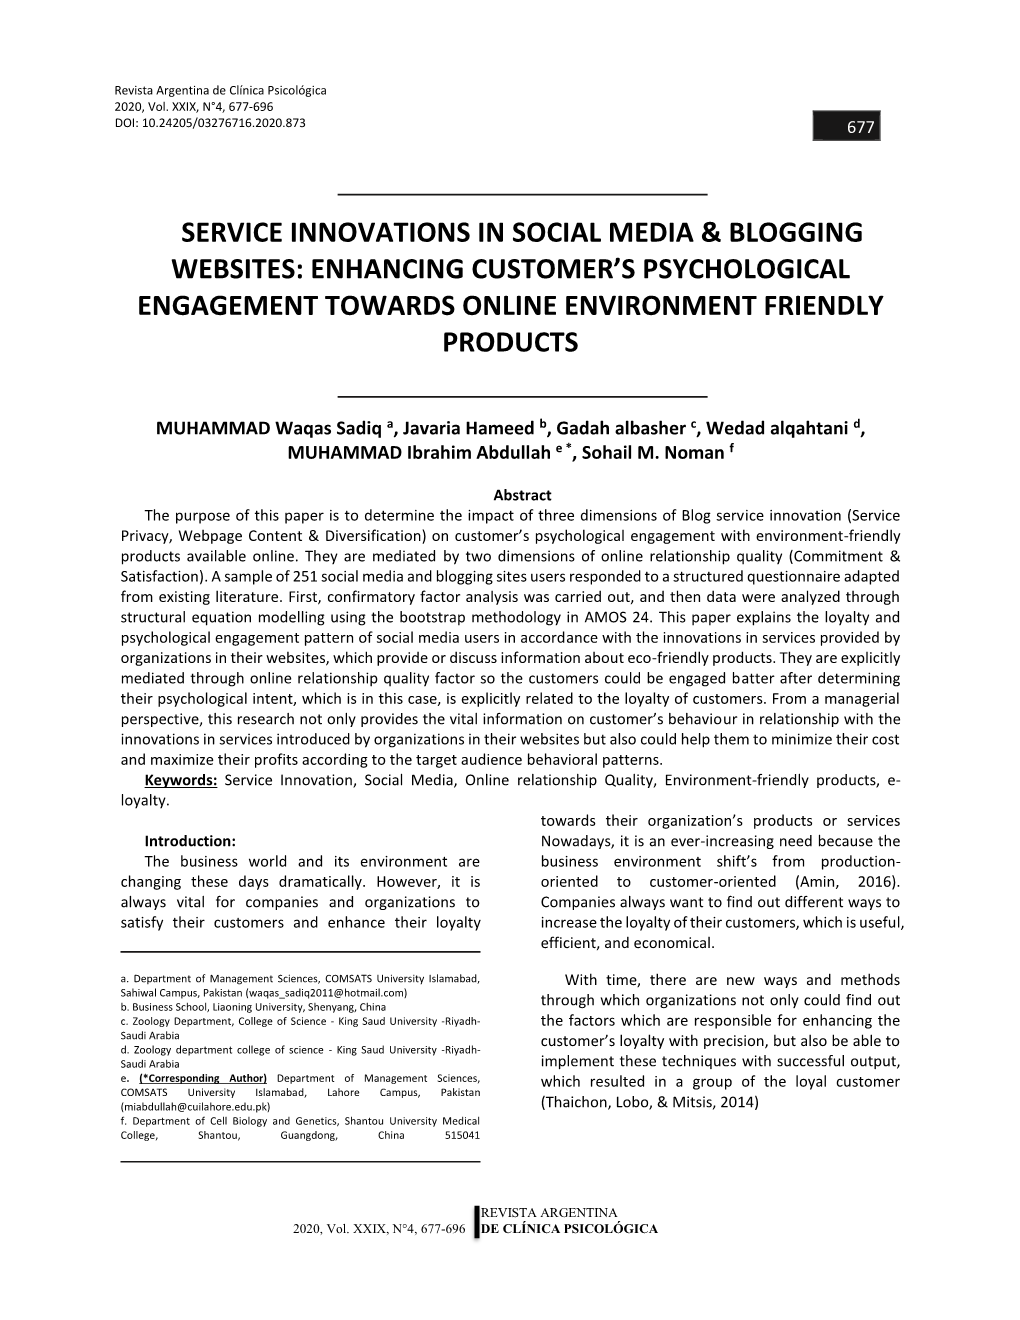 Service Innovations in Social Media & Blogging Websites